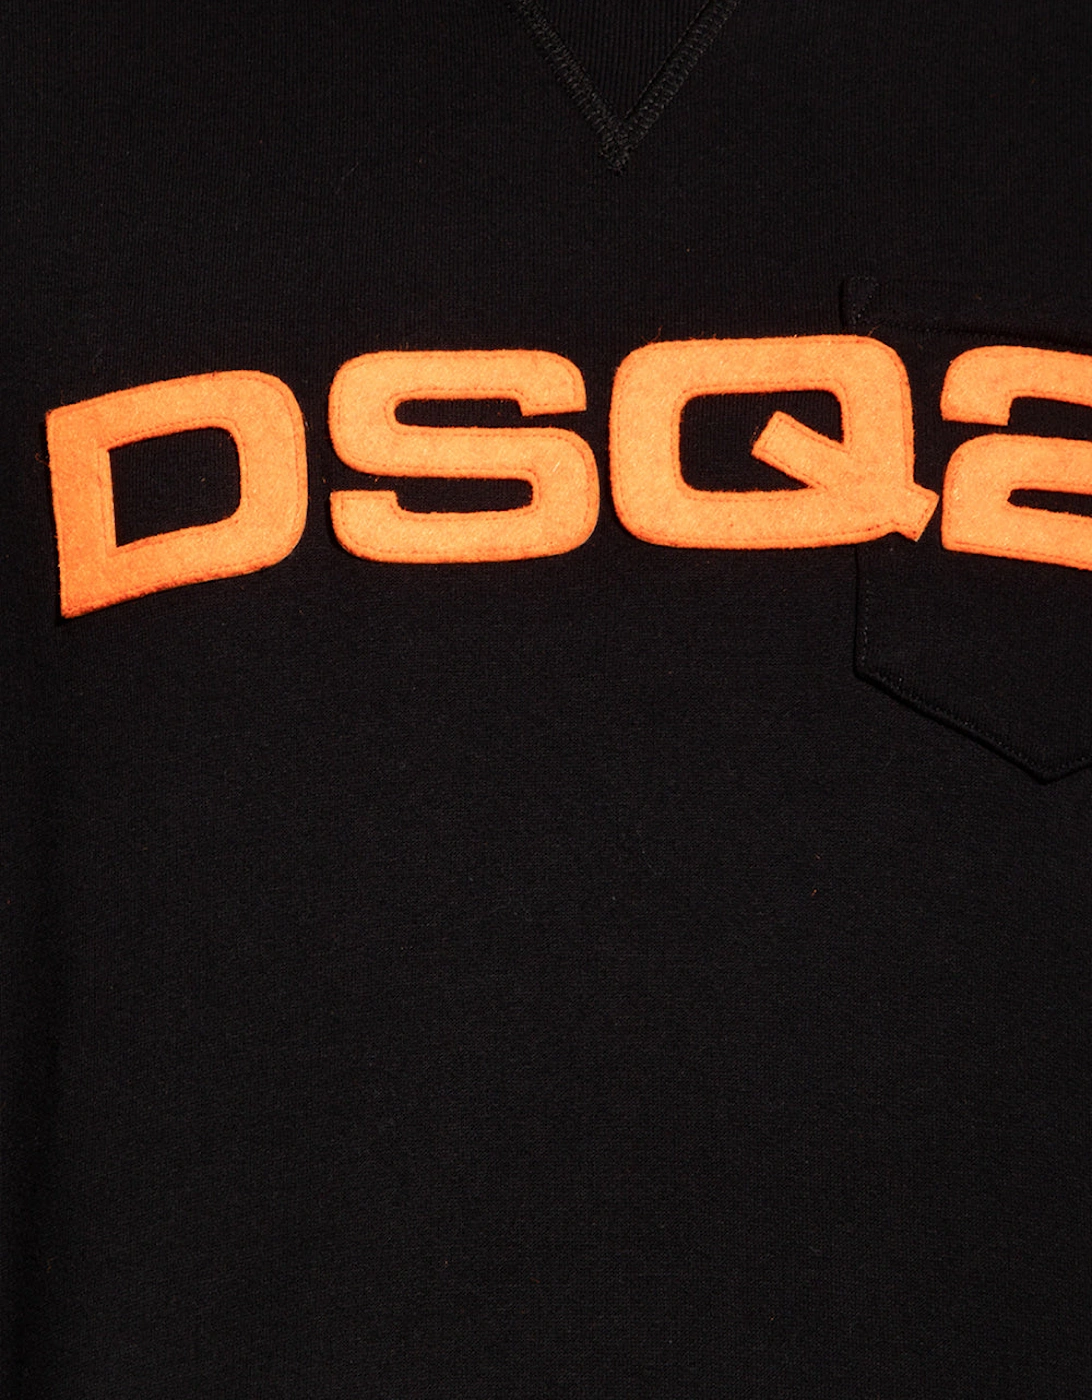 DSQ2 Orange Patch Sweatshirt in Black